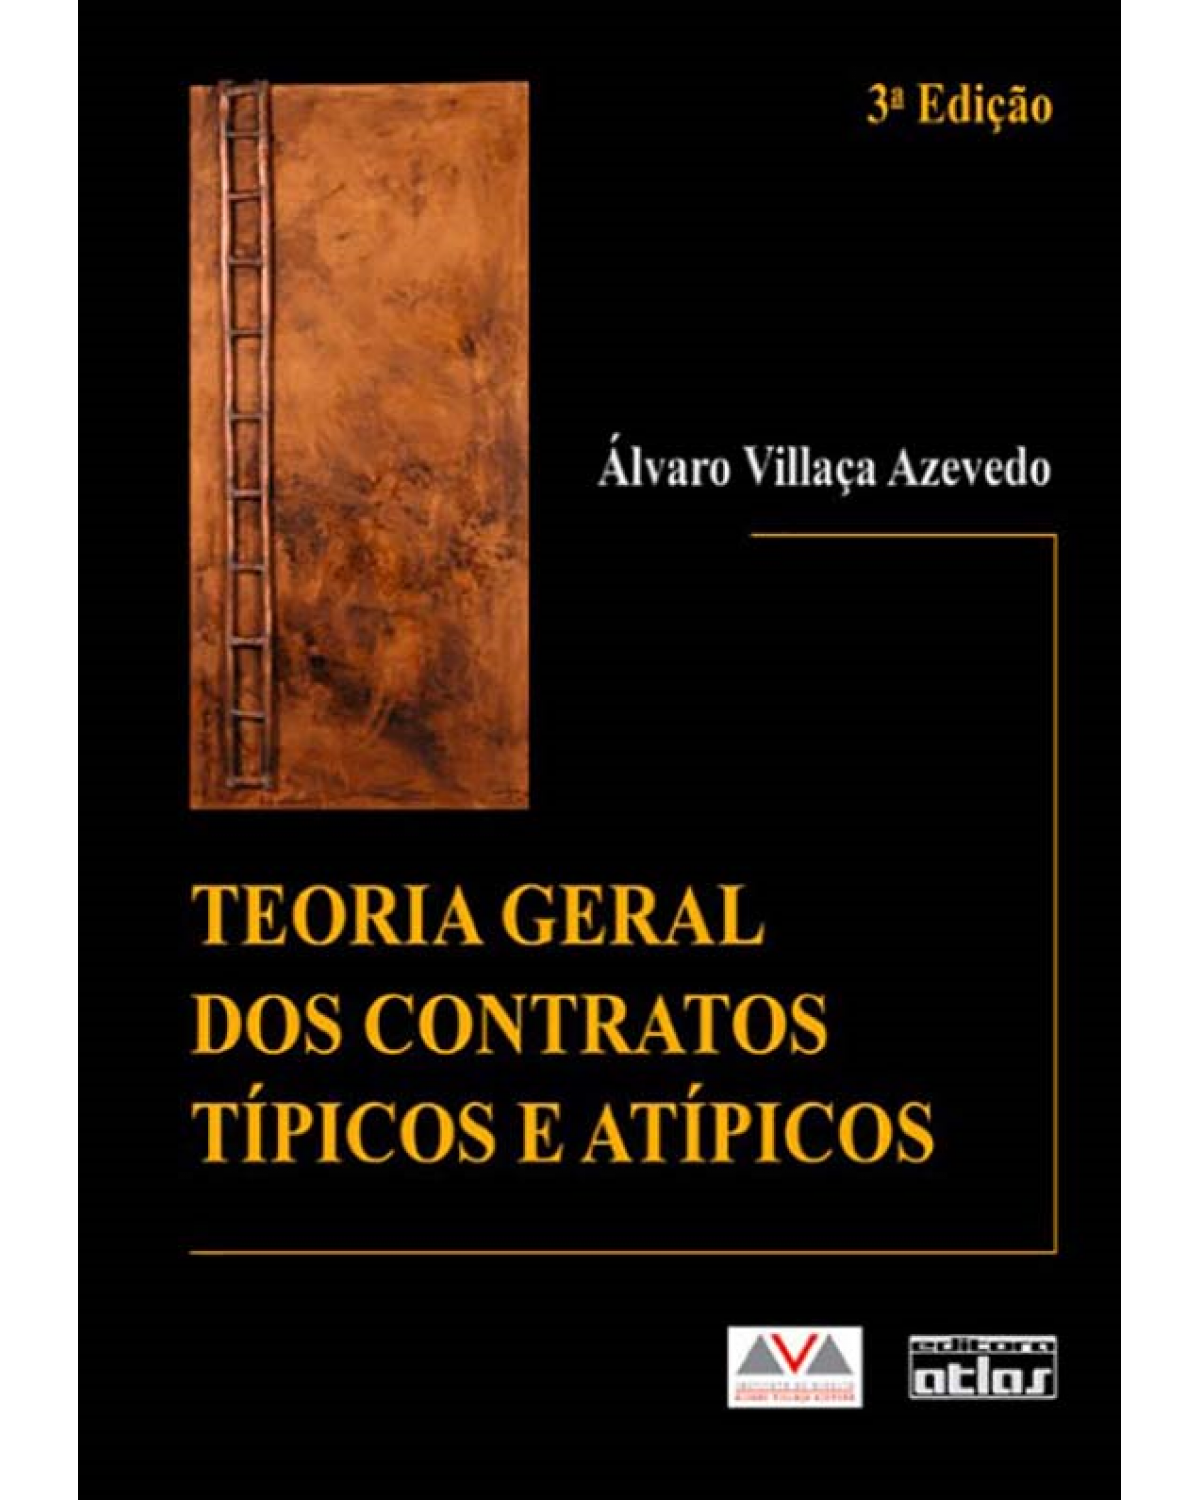 Teoria geral dos contratos típicos e atípicos - 3ª Edição | 2009